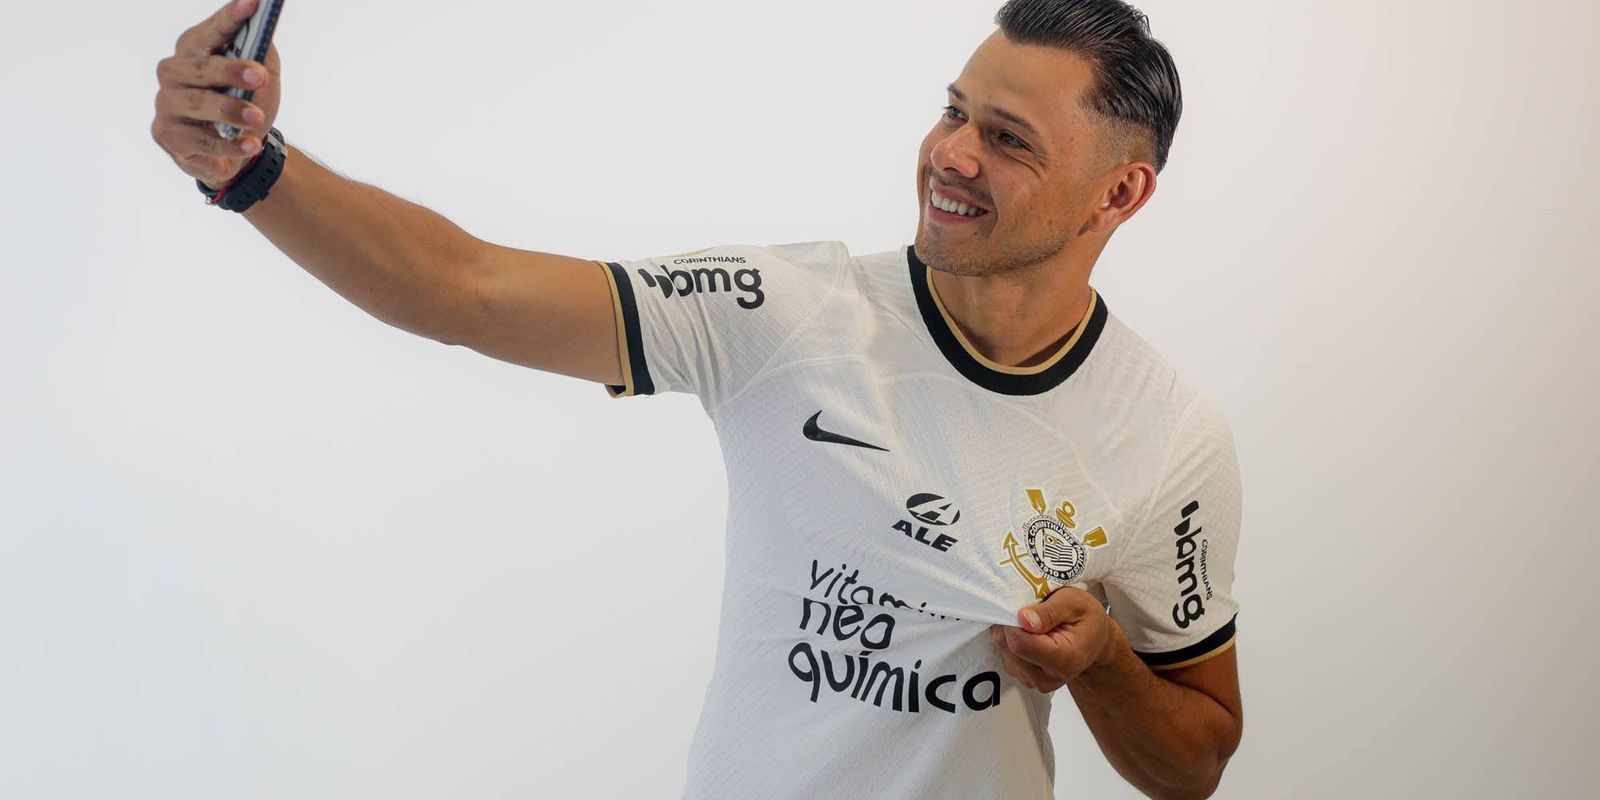 Corinthians anuncia novo dono da camisa 10 para o restante da temporada